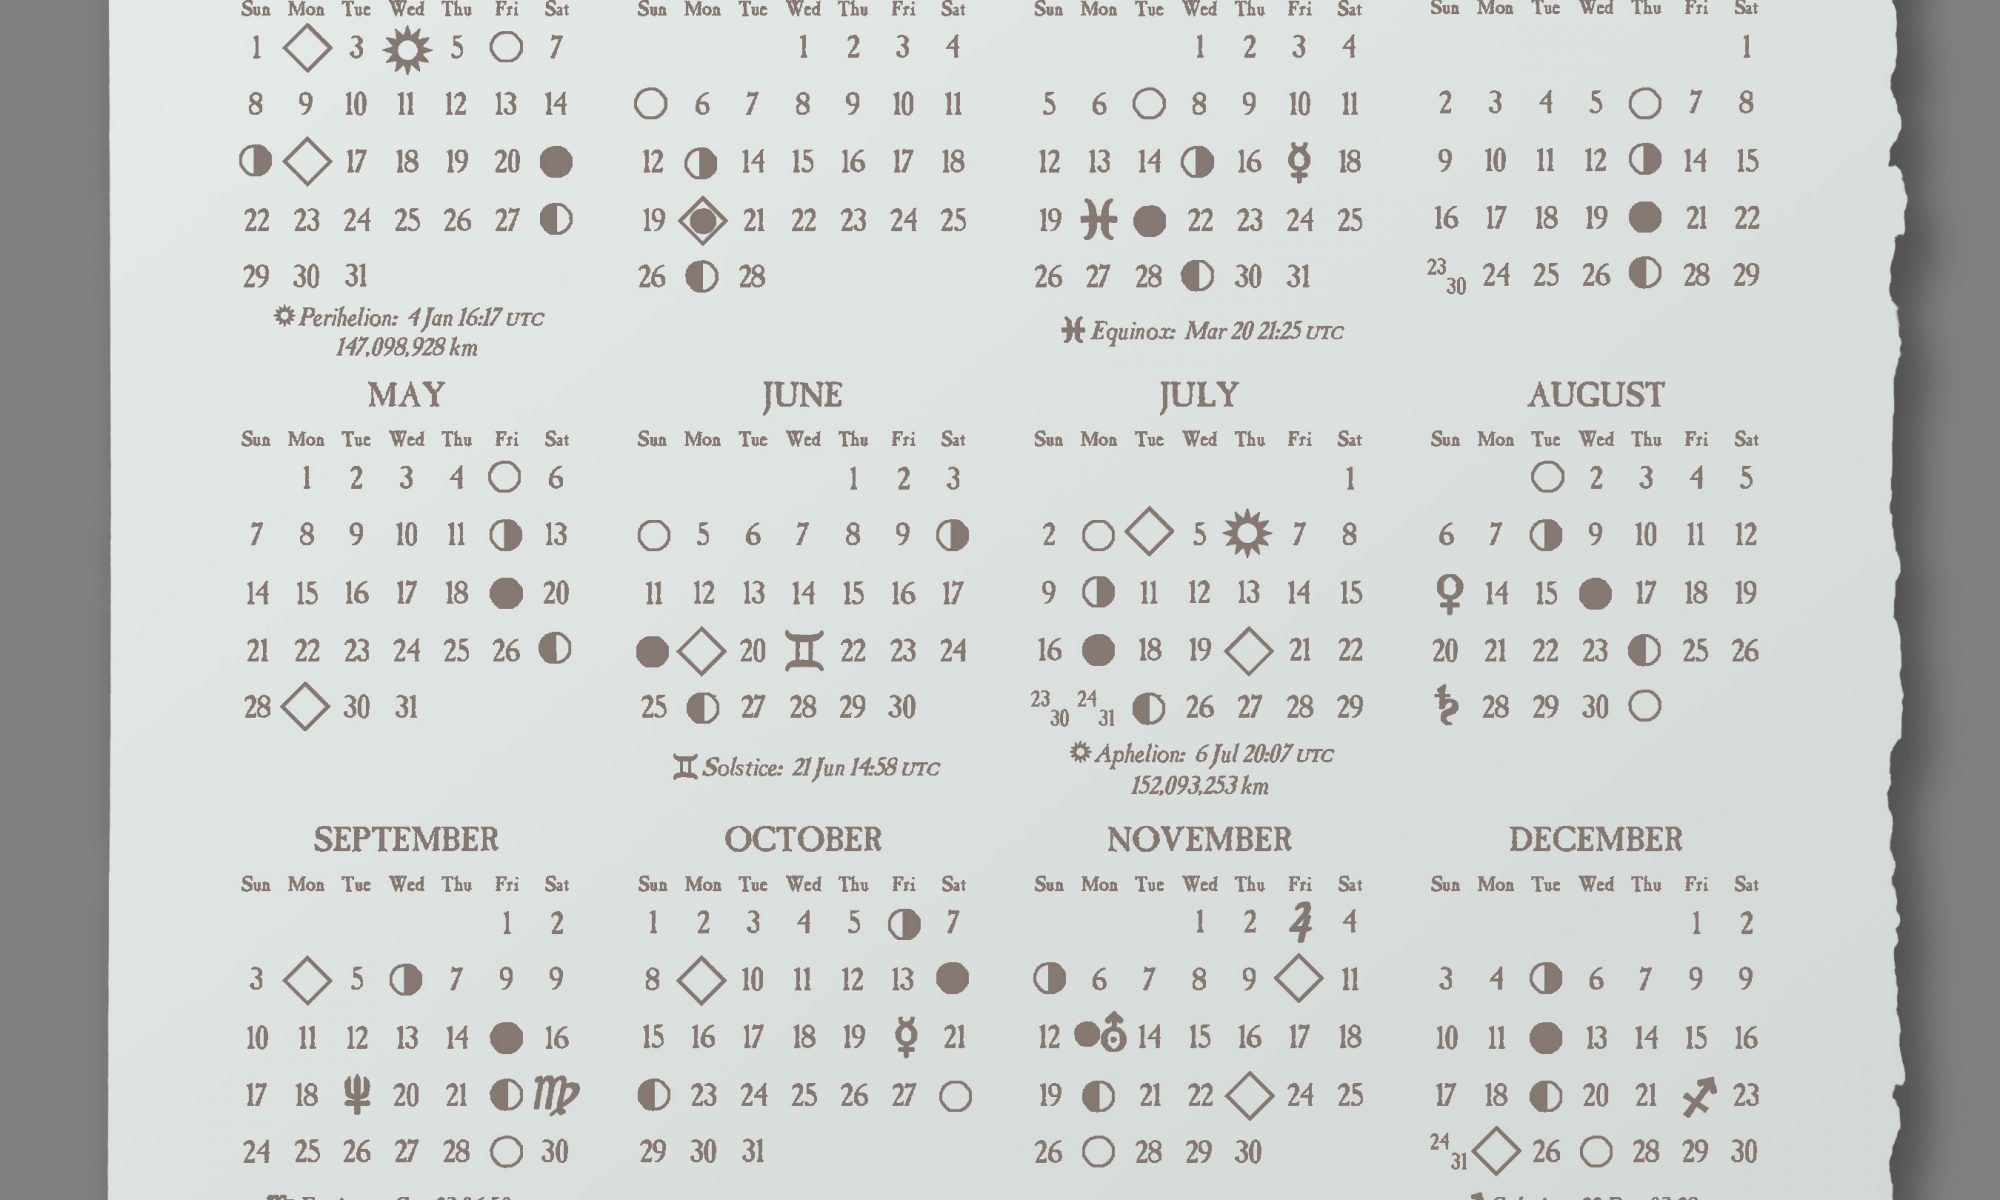 2023 Astronomical Calendar Reflex Letterpress